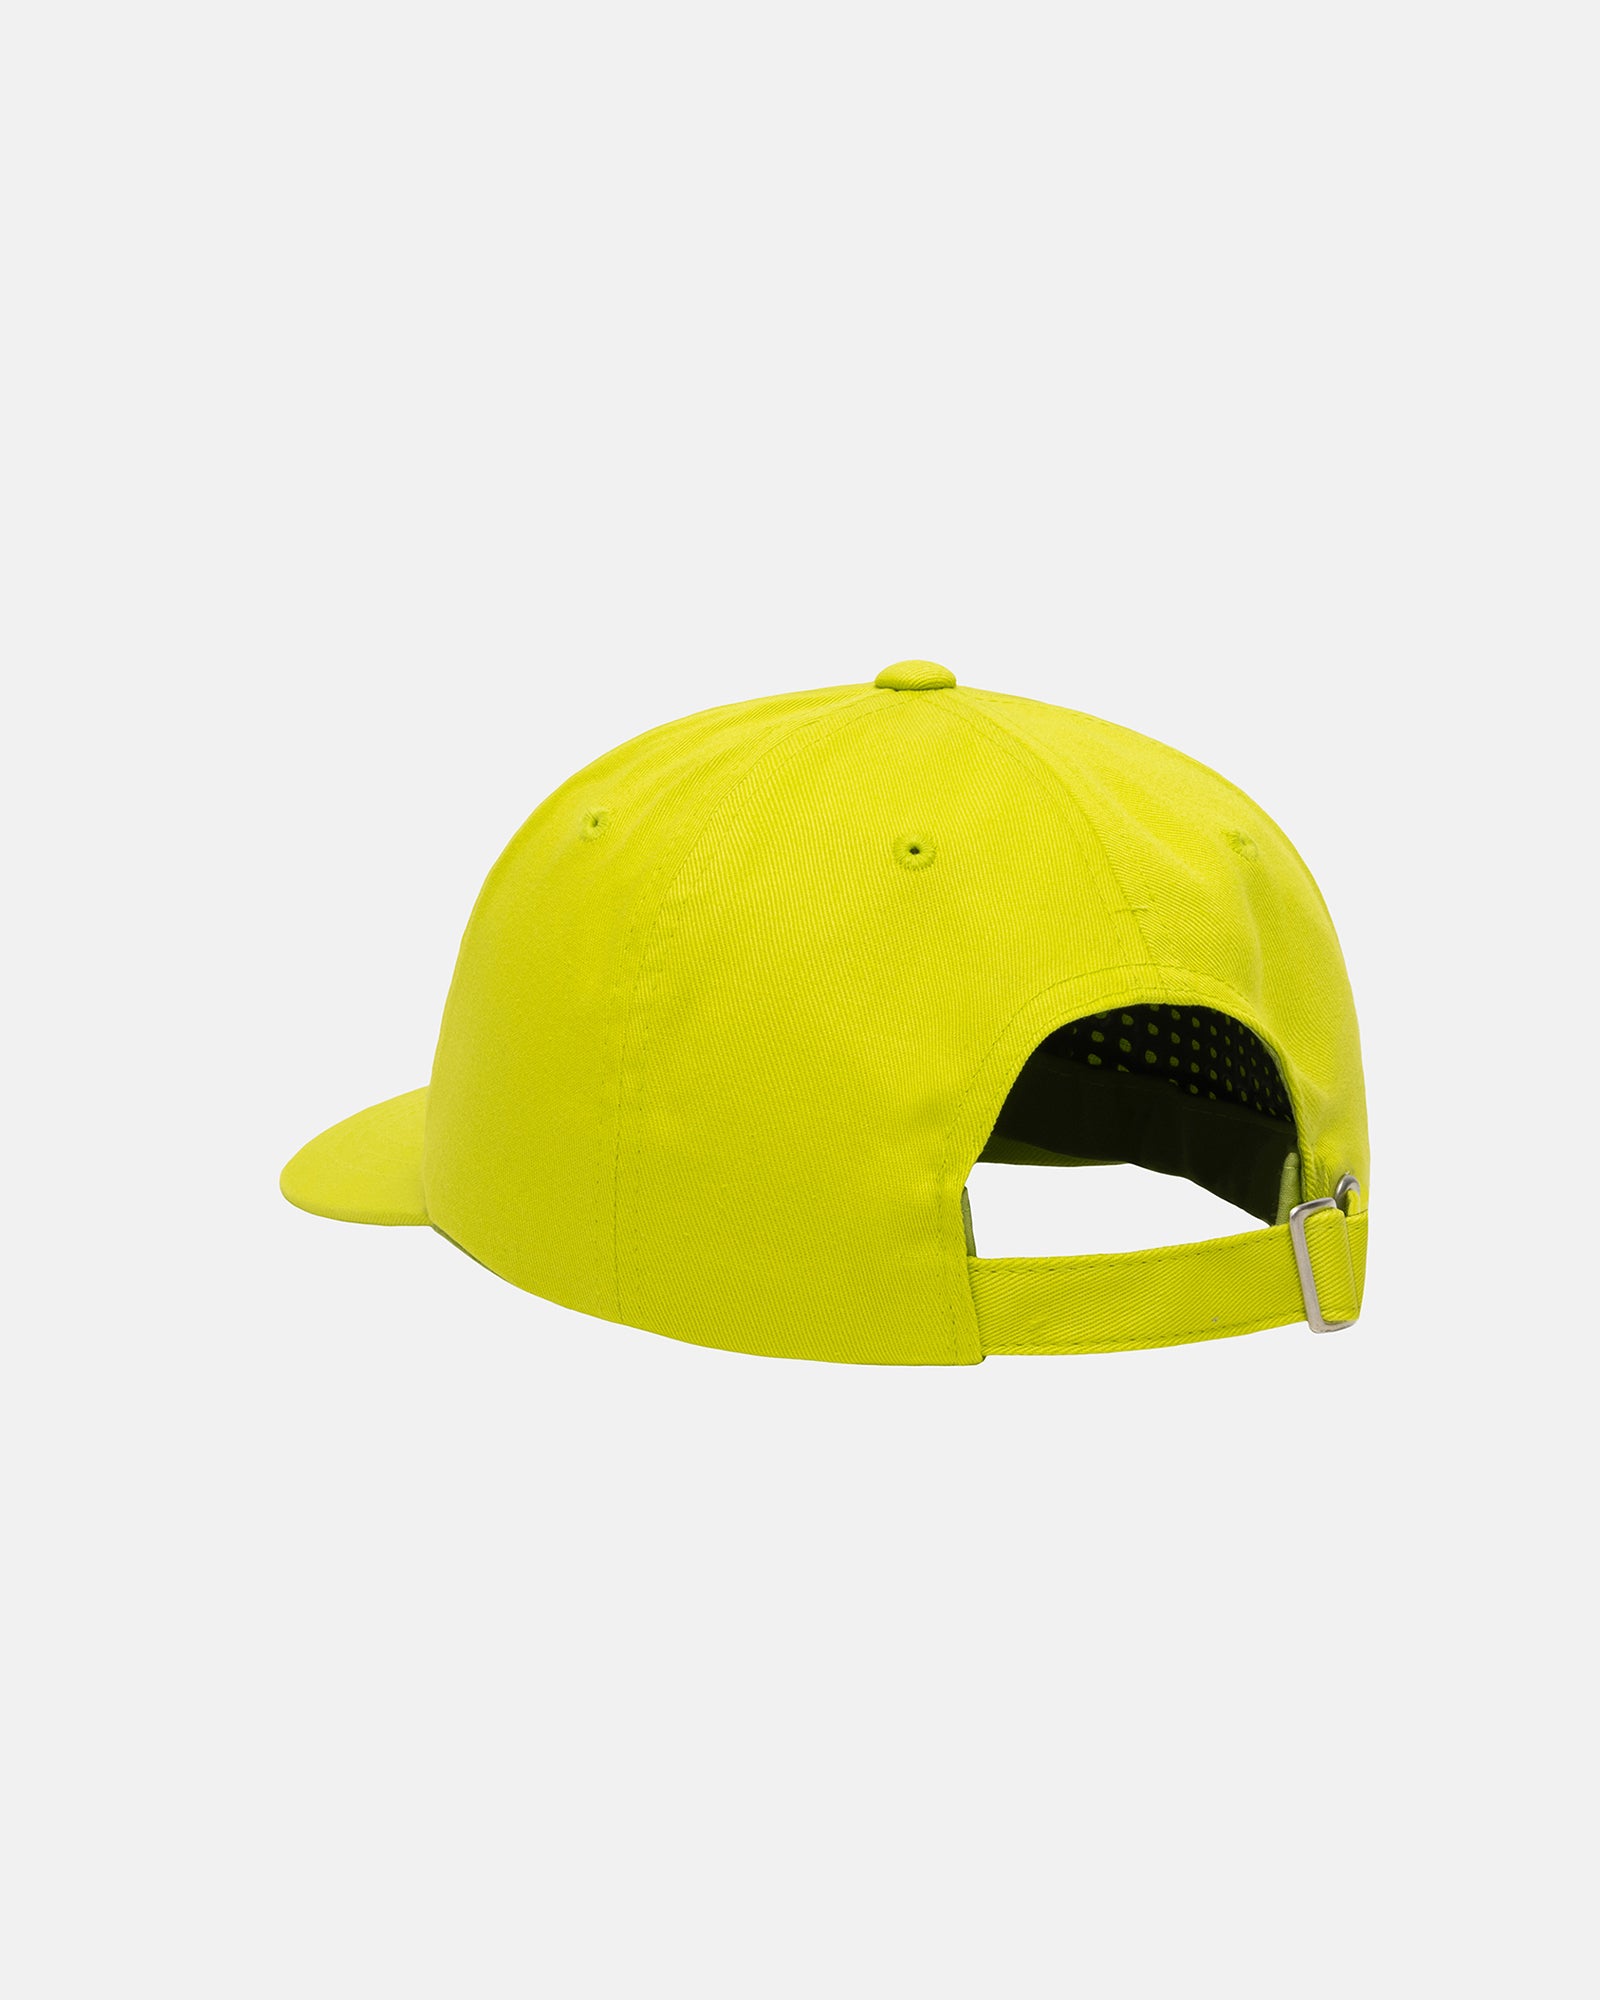 Stüssy Low Pro 3 Star Strapback Lime Headwear